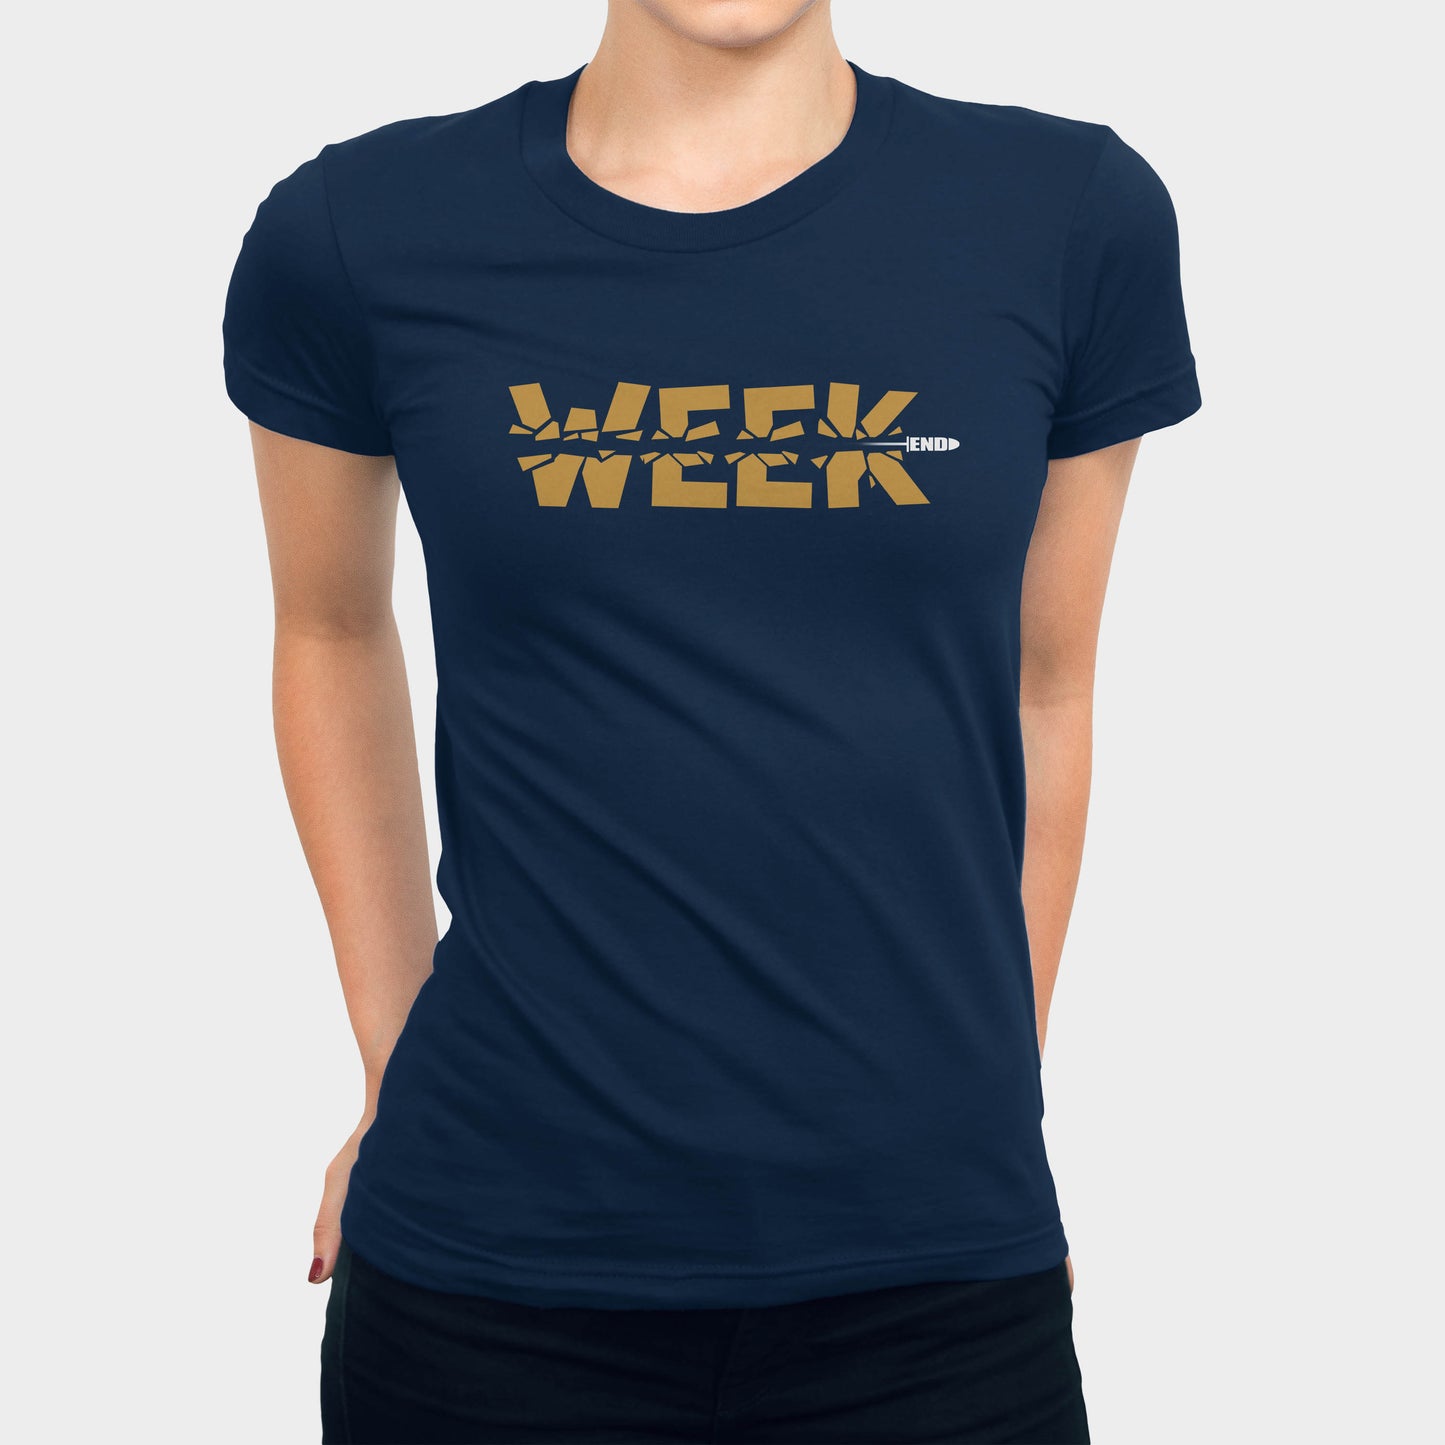 Week End Women's T-shirt